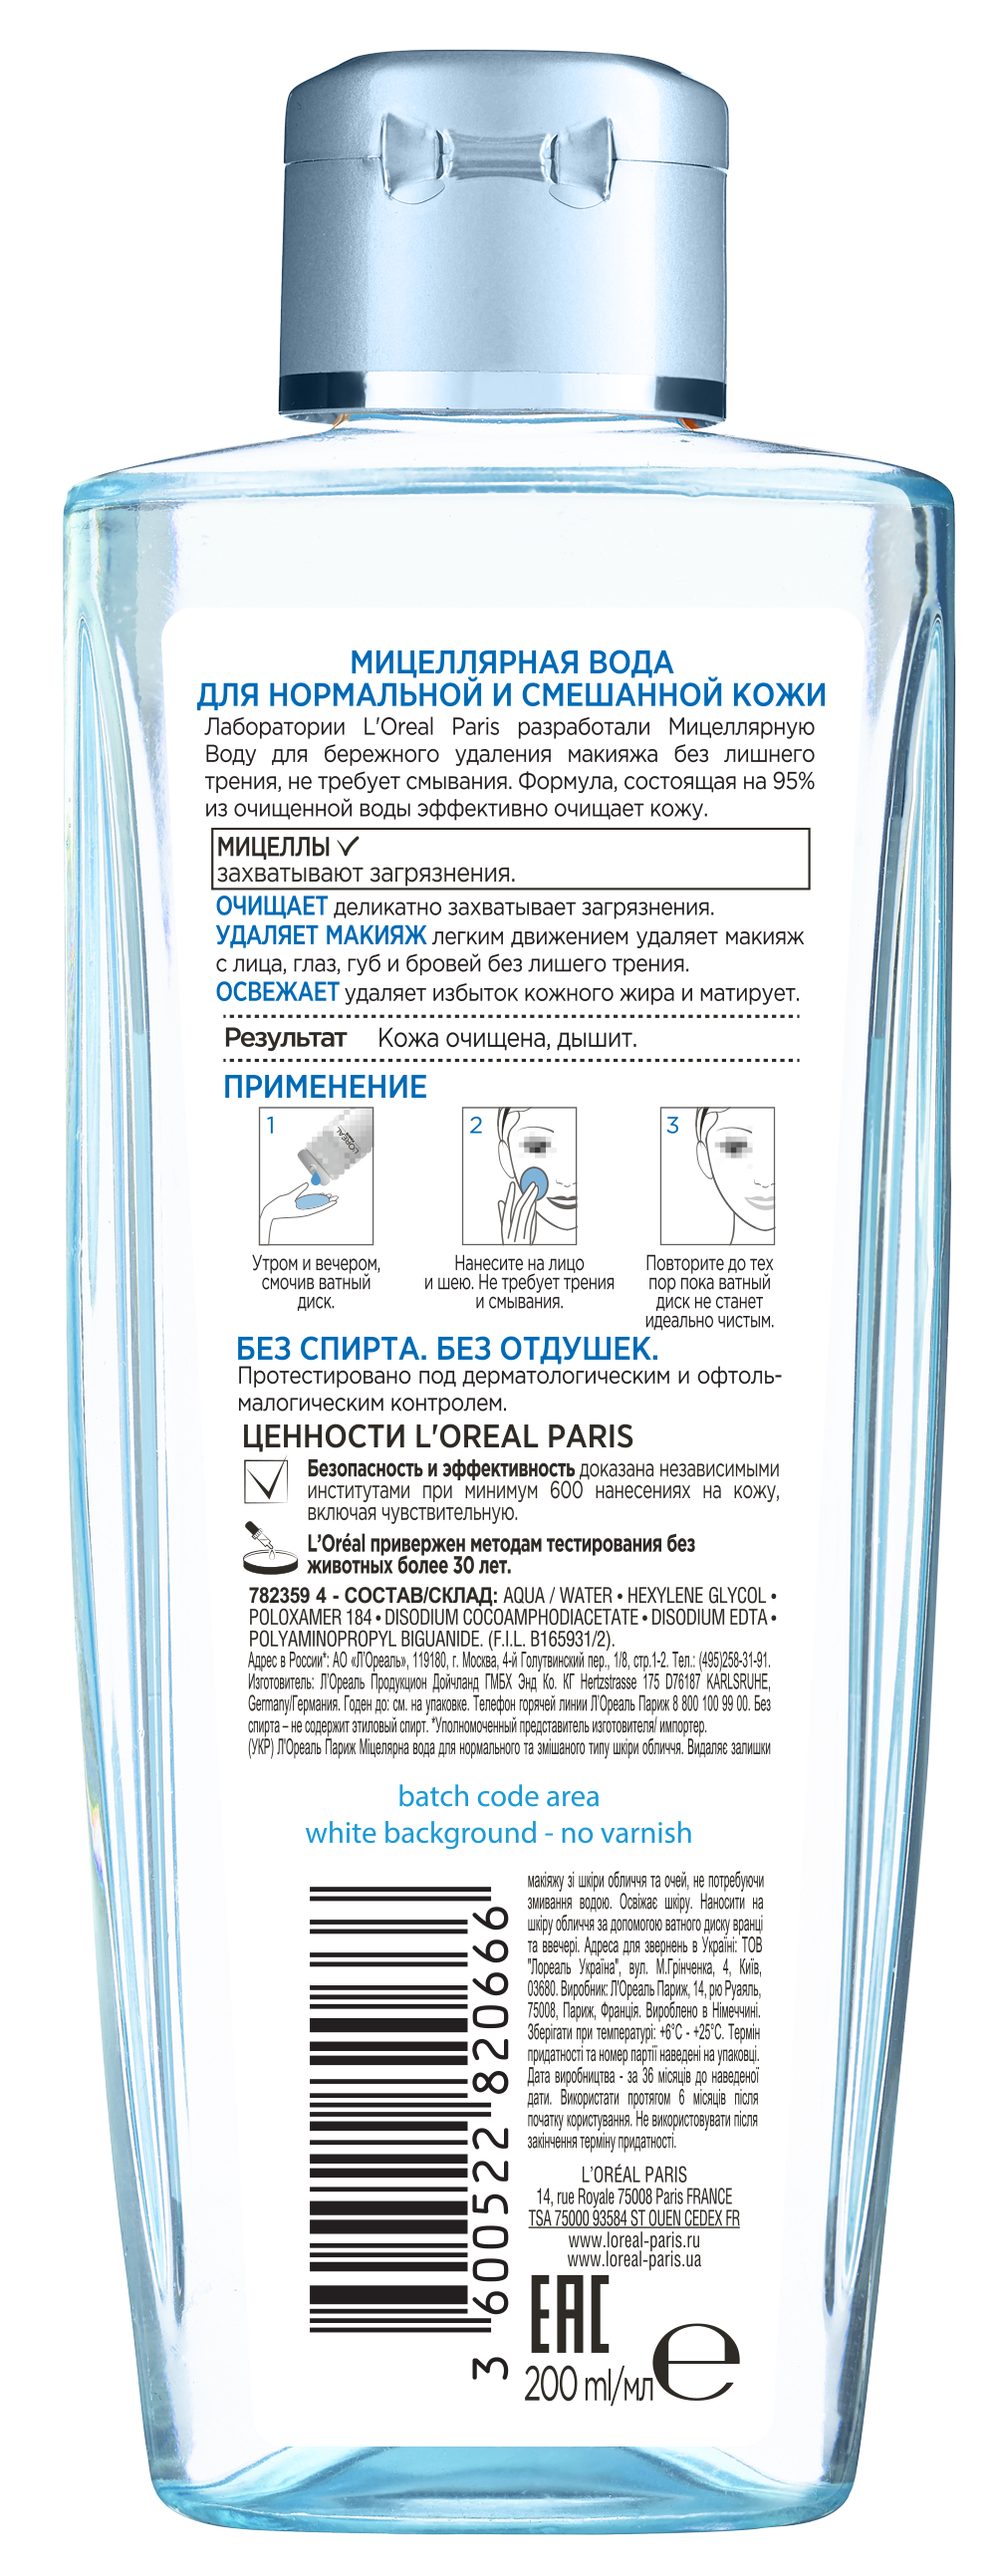 Мицеллярная вода L'Oreal Paris Skin Expert для нормальной и комбинированной кожи, 200 мл (A8110300) - фото 2